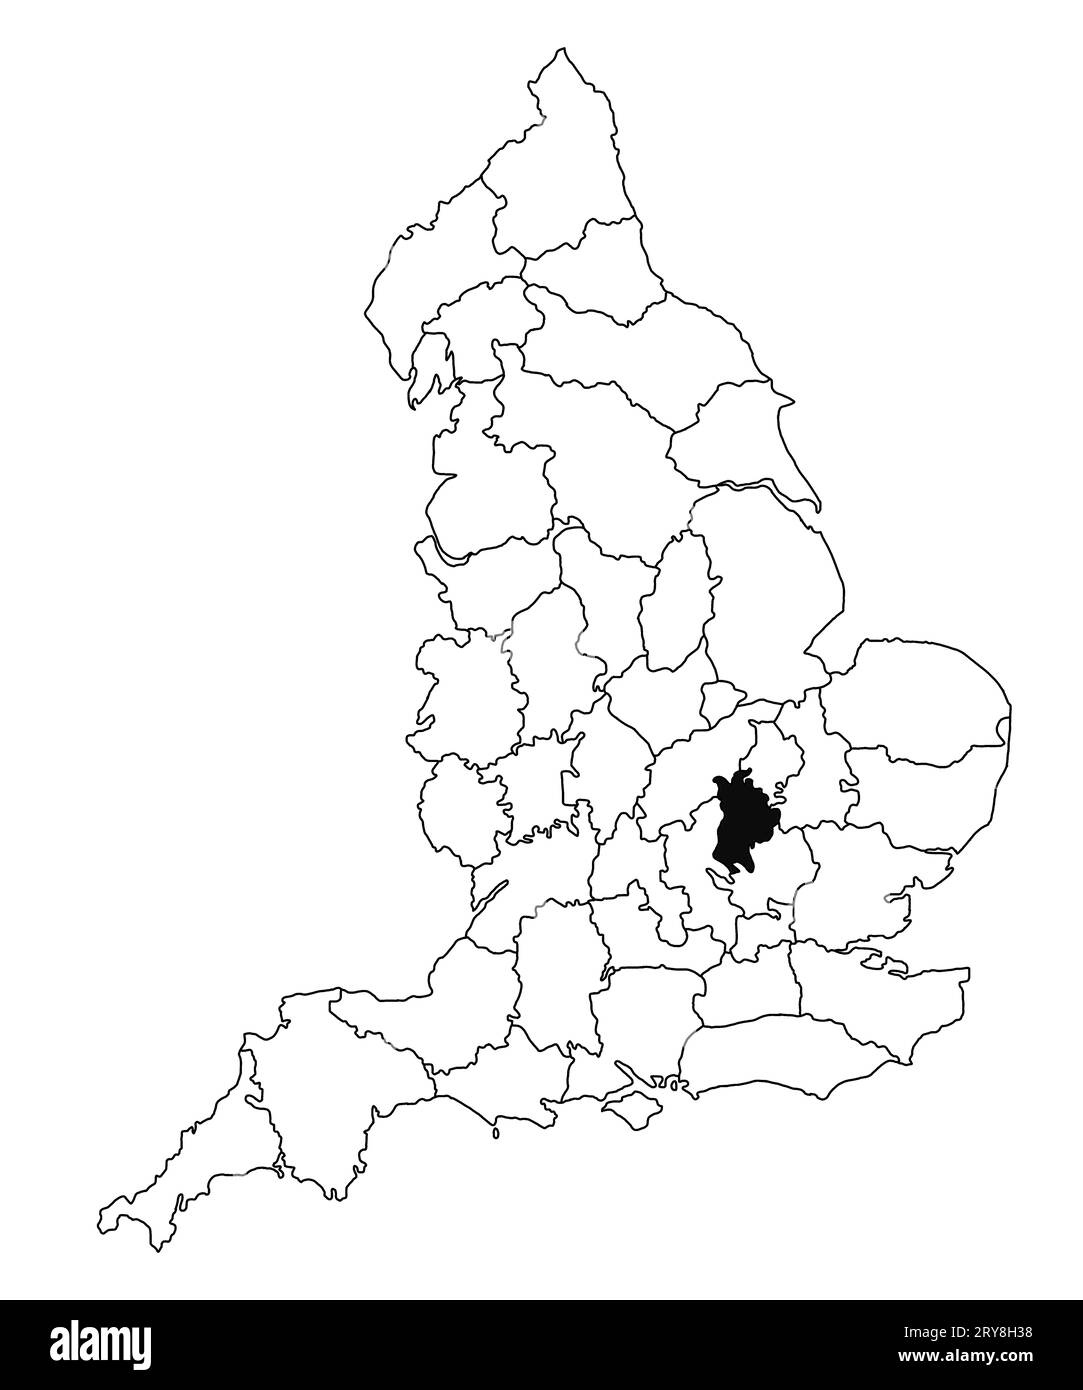 Karte von Bedfordshire County in England auf weißem Hintergrund. Single County Karte, schwarz hervorgehoben auf der englischen Verwaltungskarte. Vereinigtes Königreich Stockfoto